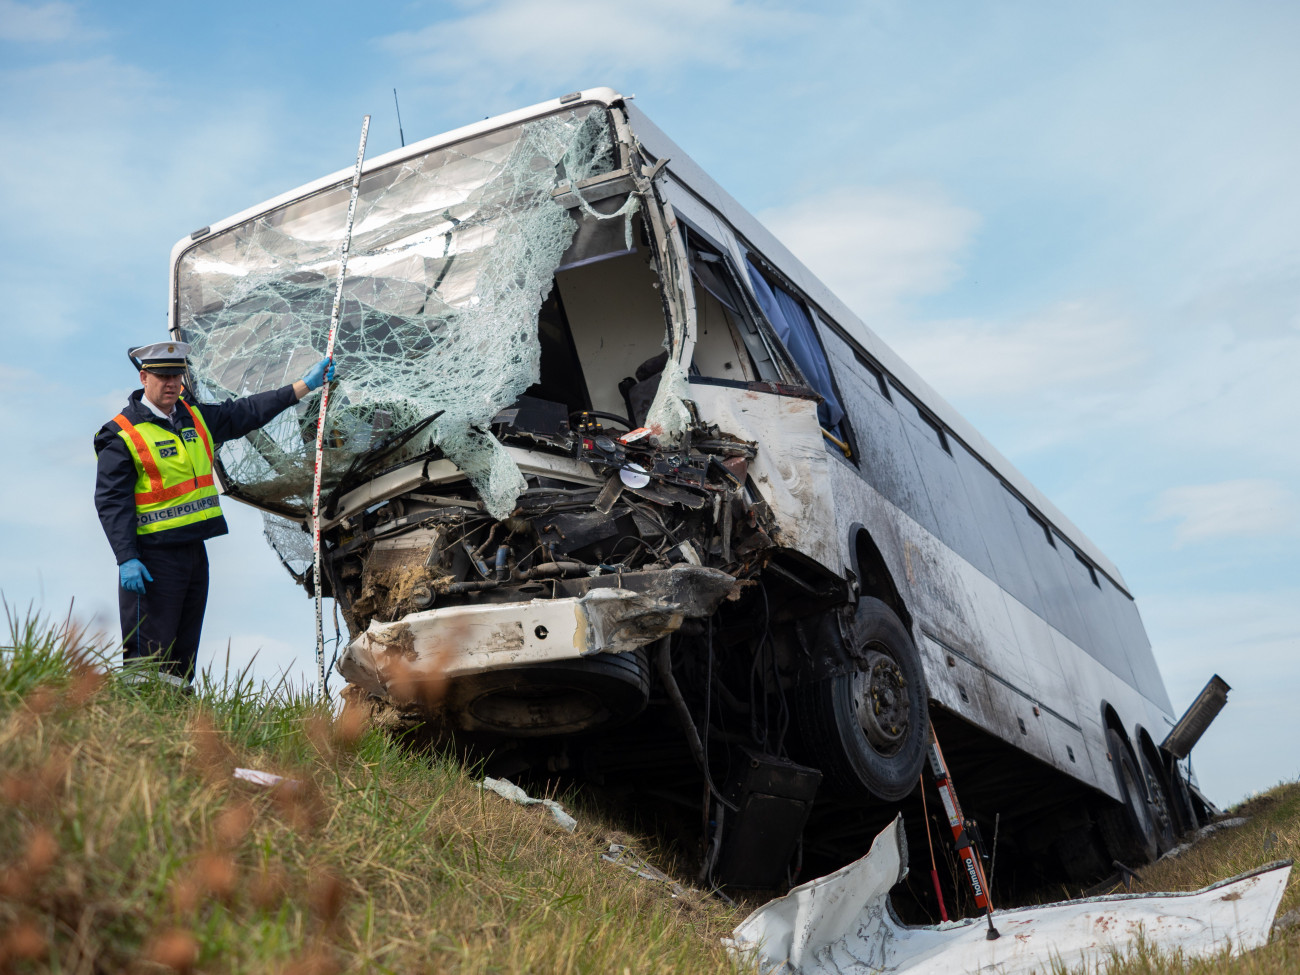 Felsőszentiván, 2021. szeptember 24.
Összeroncsolódott autóbusz az 55-ös úton Felsőszentiván és Tataháza között 2021. szeptember 24-én. A menetrend szerint közlekedő autóbusz összeütközött egy furgonnal. A balesetben egy ember meghalt.
MTI/Donka Ferenc